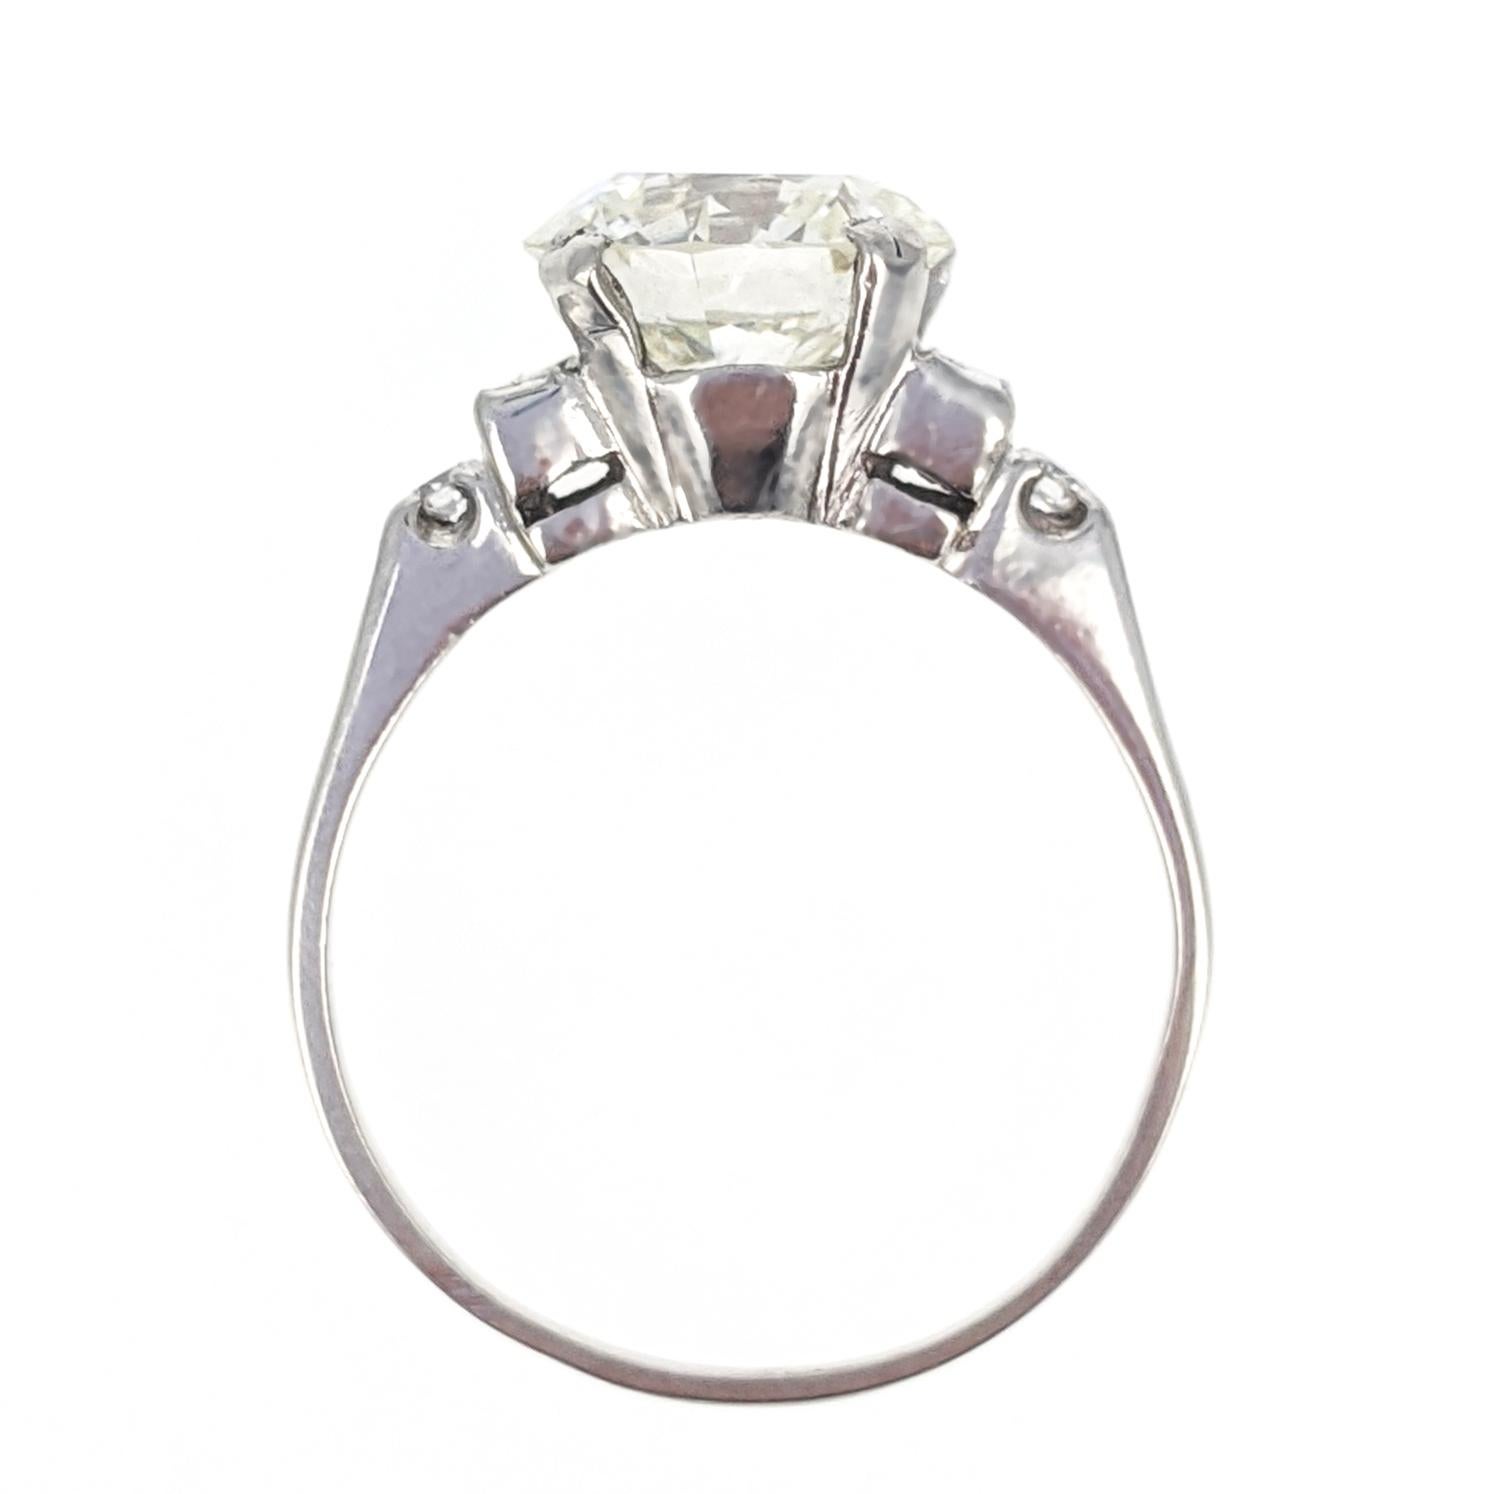 3.02 Carat GIA Certified Round Brilliant Cut Diamond Platinum Engagement Ring 1